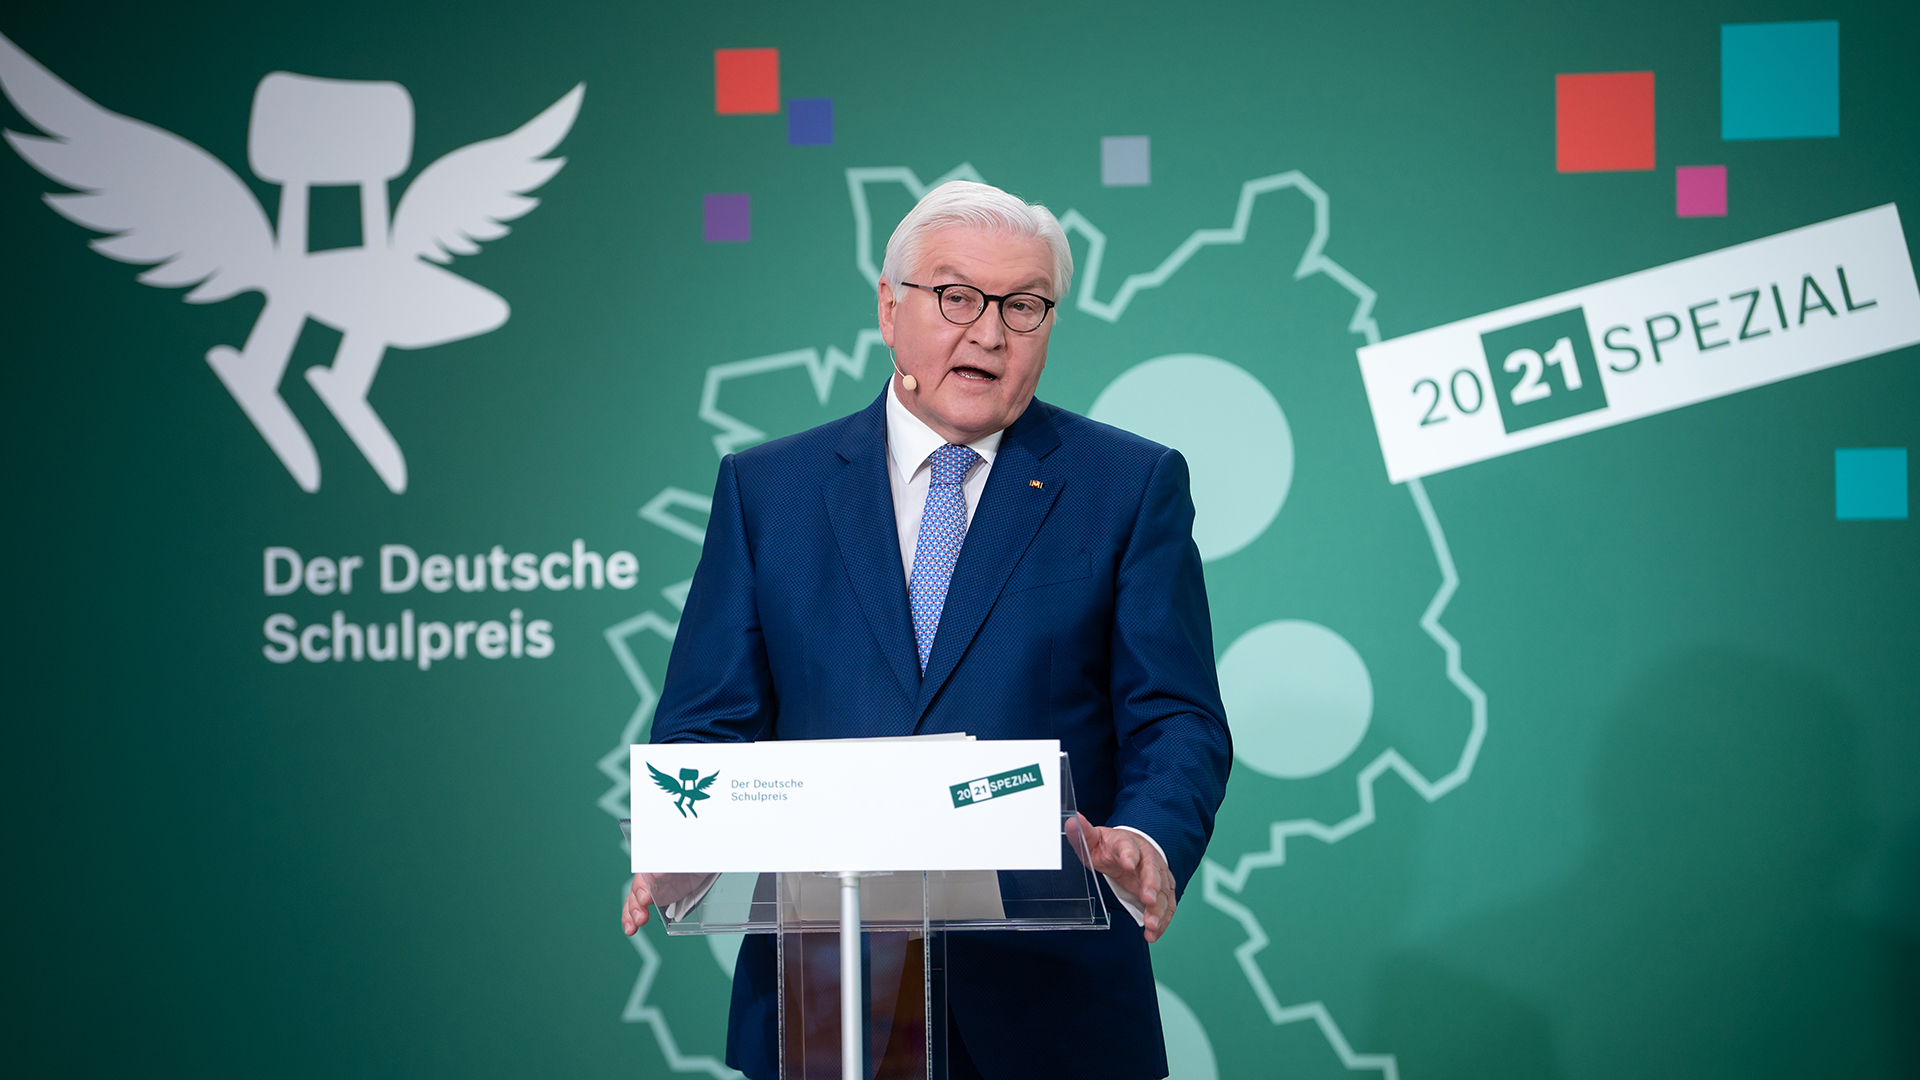 Frank-Walter Steinmeier spricht bei der Verleihung des Deutschen Schulpreises 2021 Spezial. | dpa